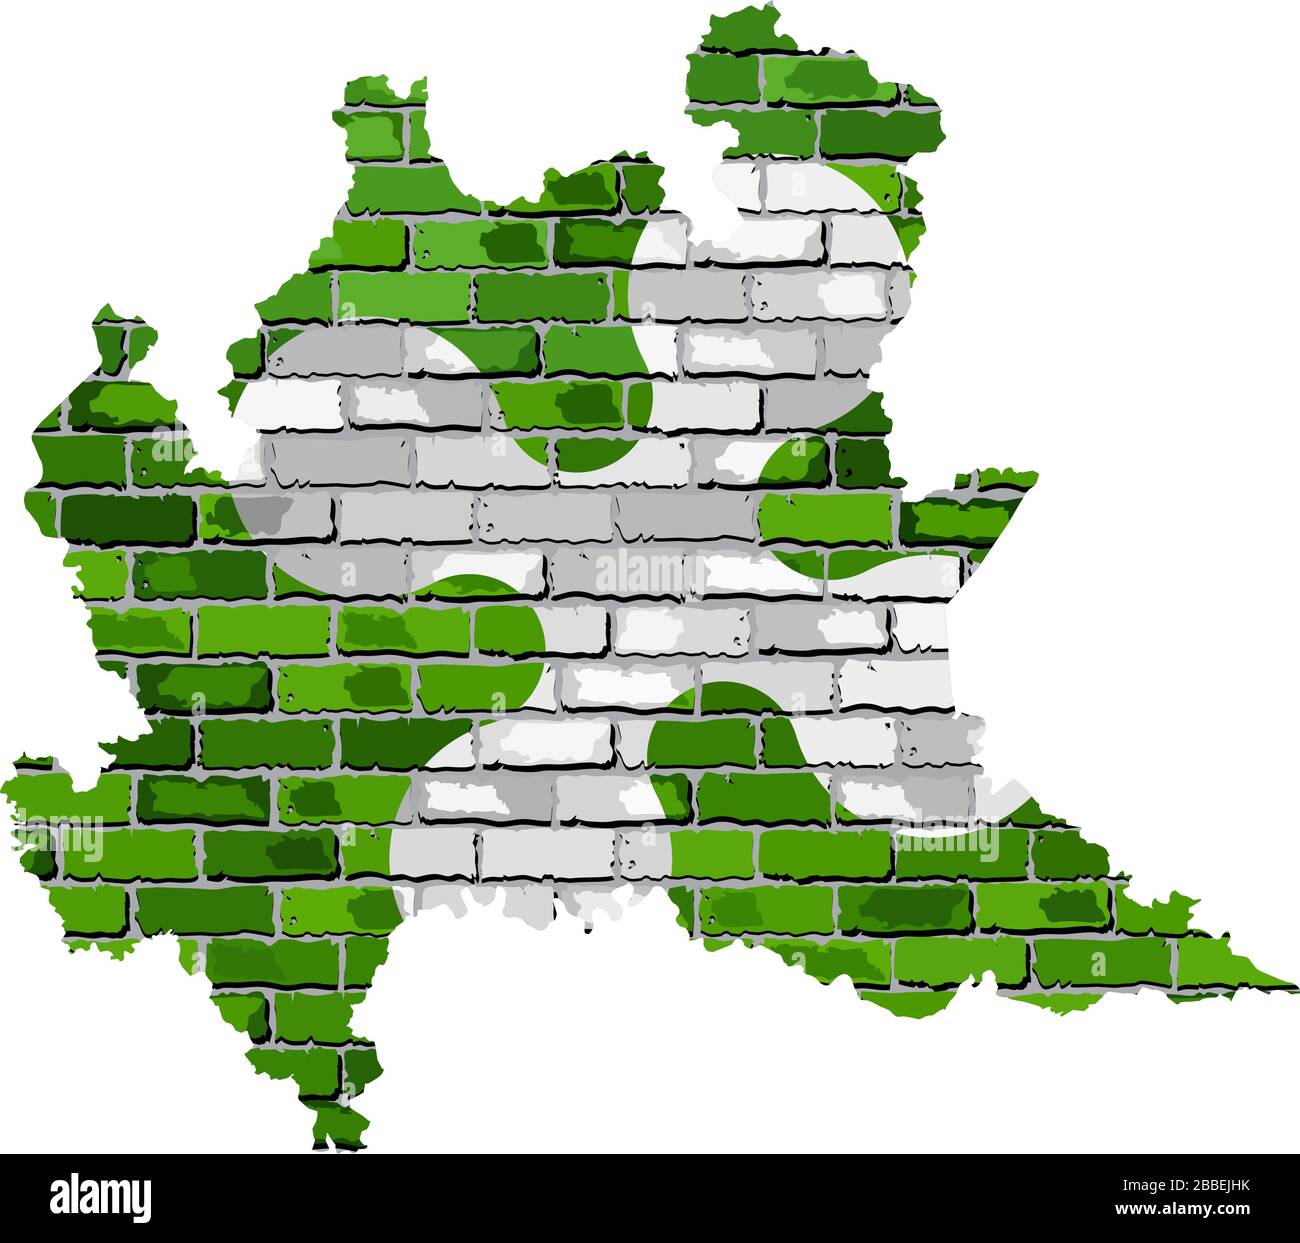 Carte de Lombardie sur un mur de briques - Illustration, carte de Lombardie avec drapeau à l'intérieur Illustration de Vecteur